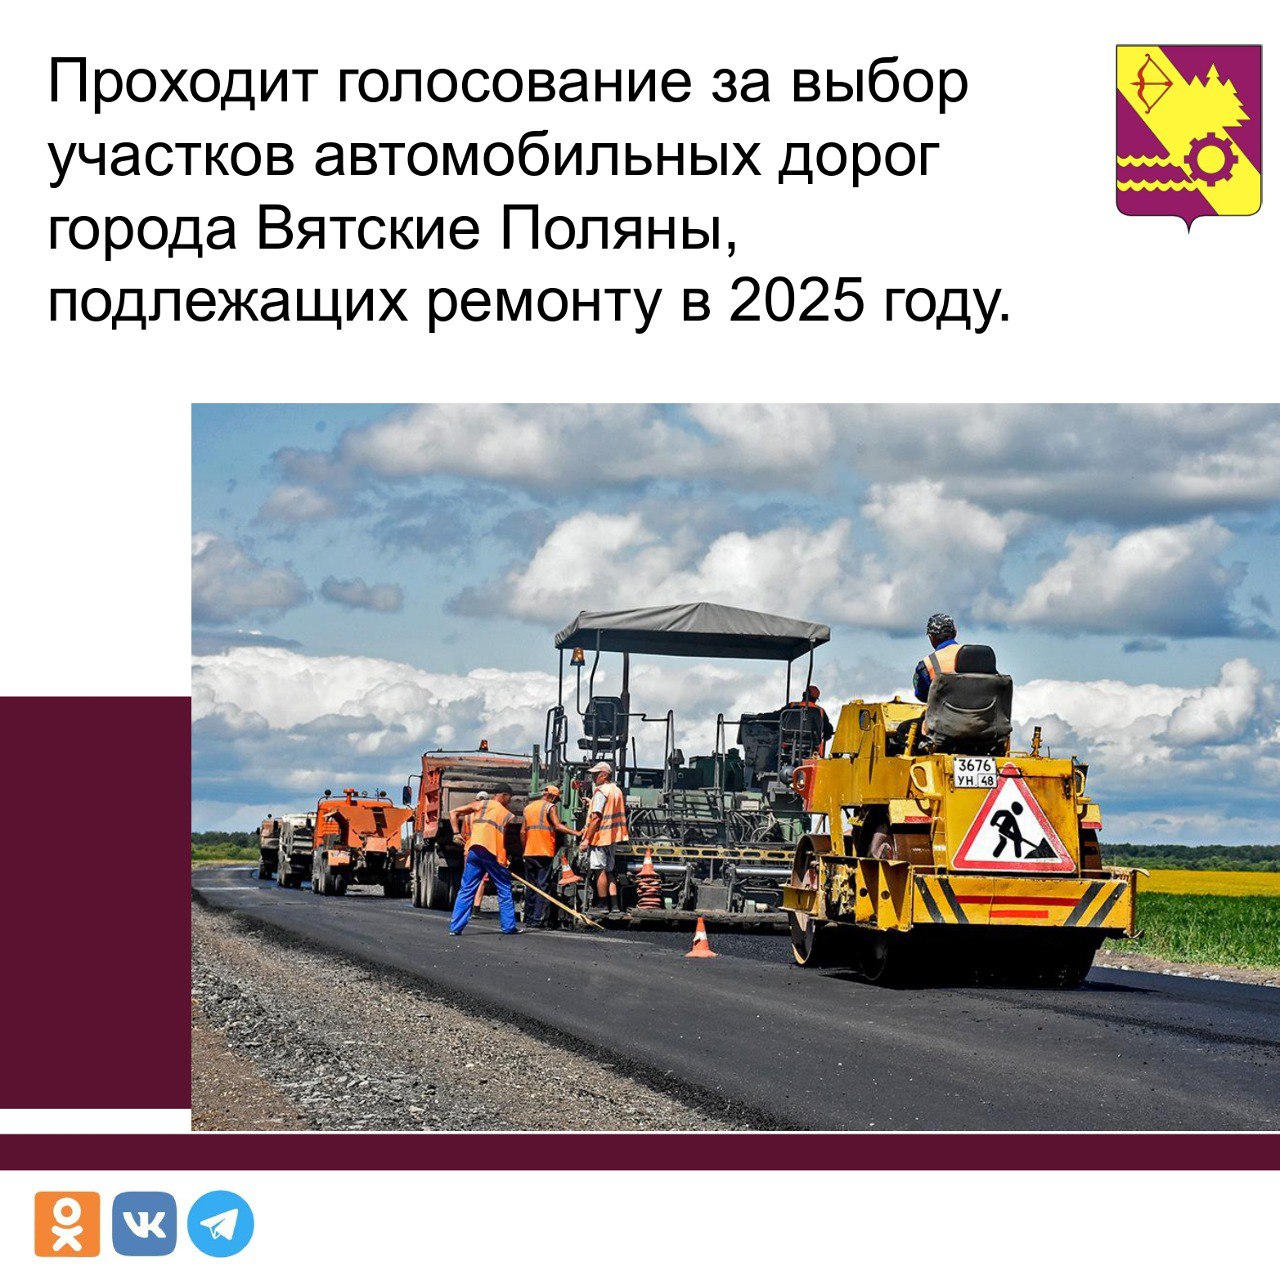 Голосование по выбору участков автомобильных дорог города Вятские Поляны, подлежащих ремонту в 2025 году.